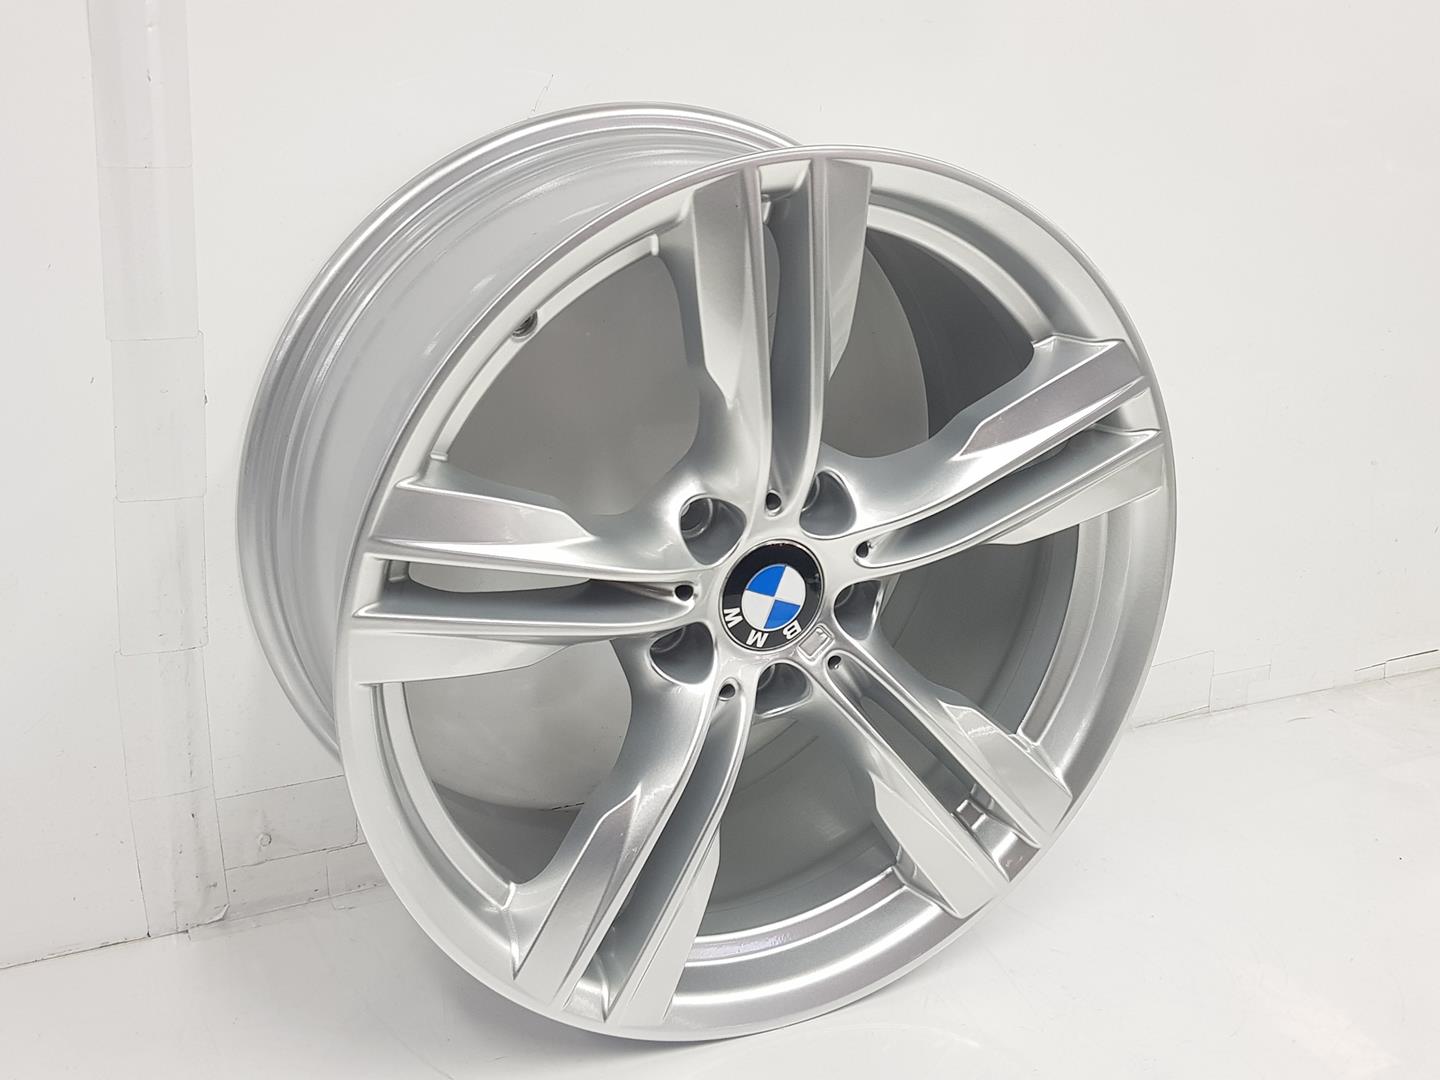 BMW X5 F15 (2013-2018) Wheel 36117846786, 9JX19, 19PULGADAS 24238662